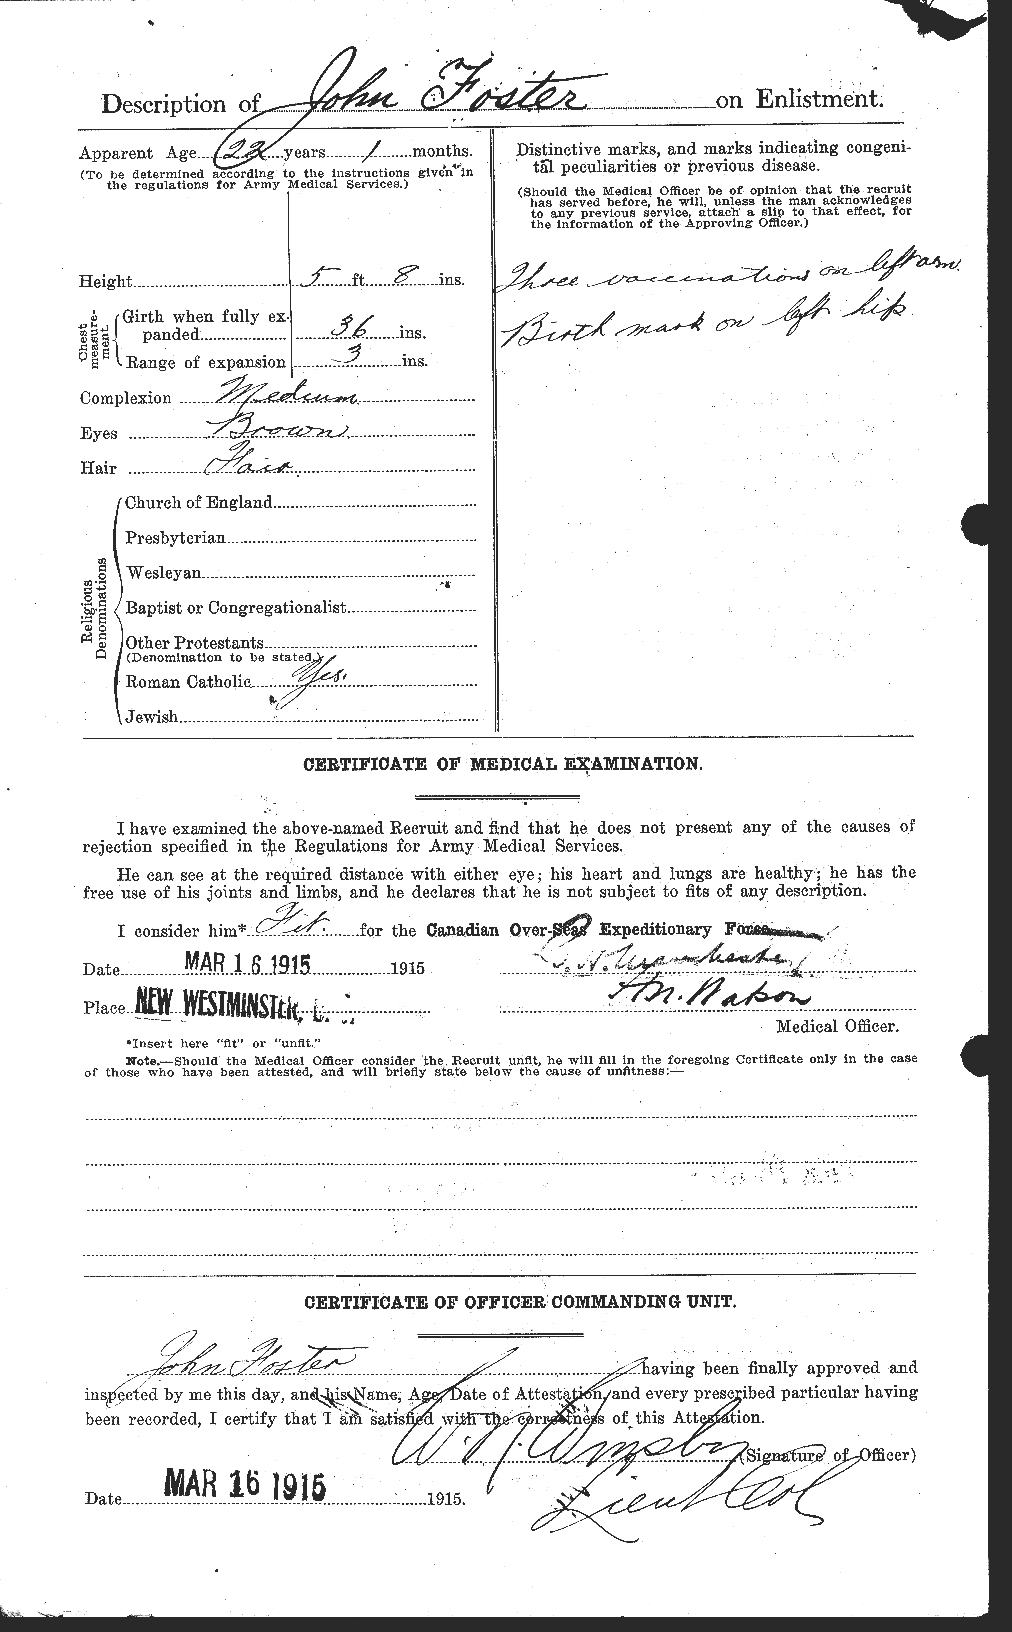 Dossiers du Personnel de la Première Guerre mondiale - CEC 333326b